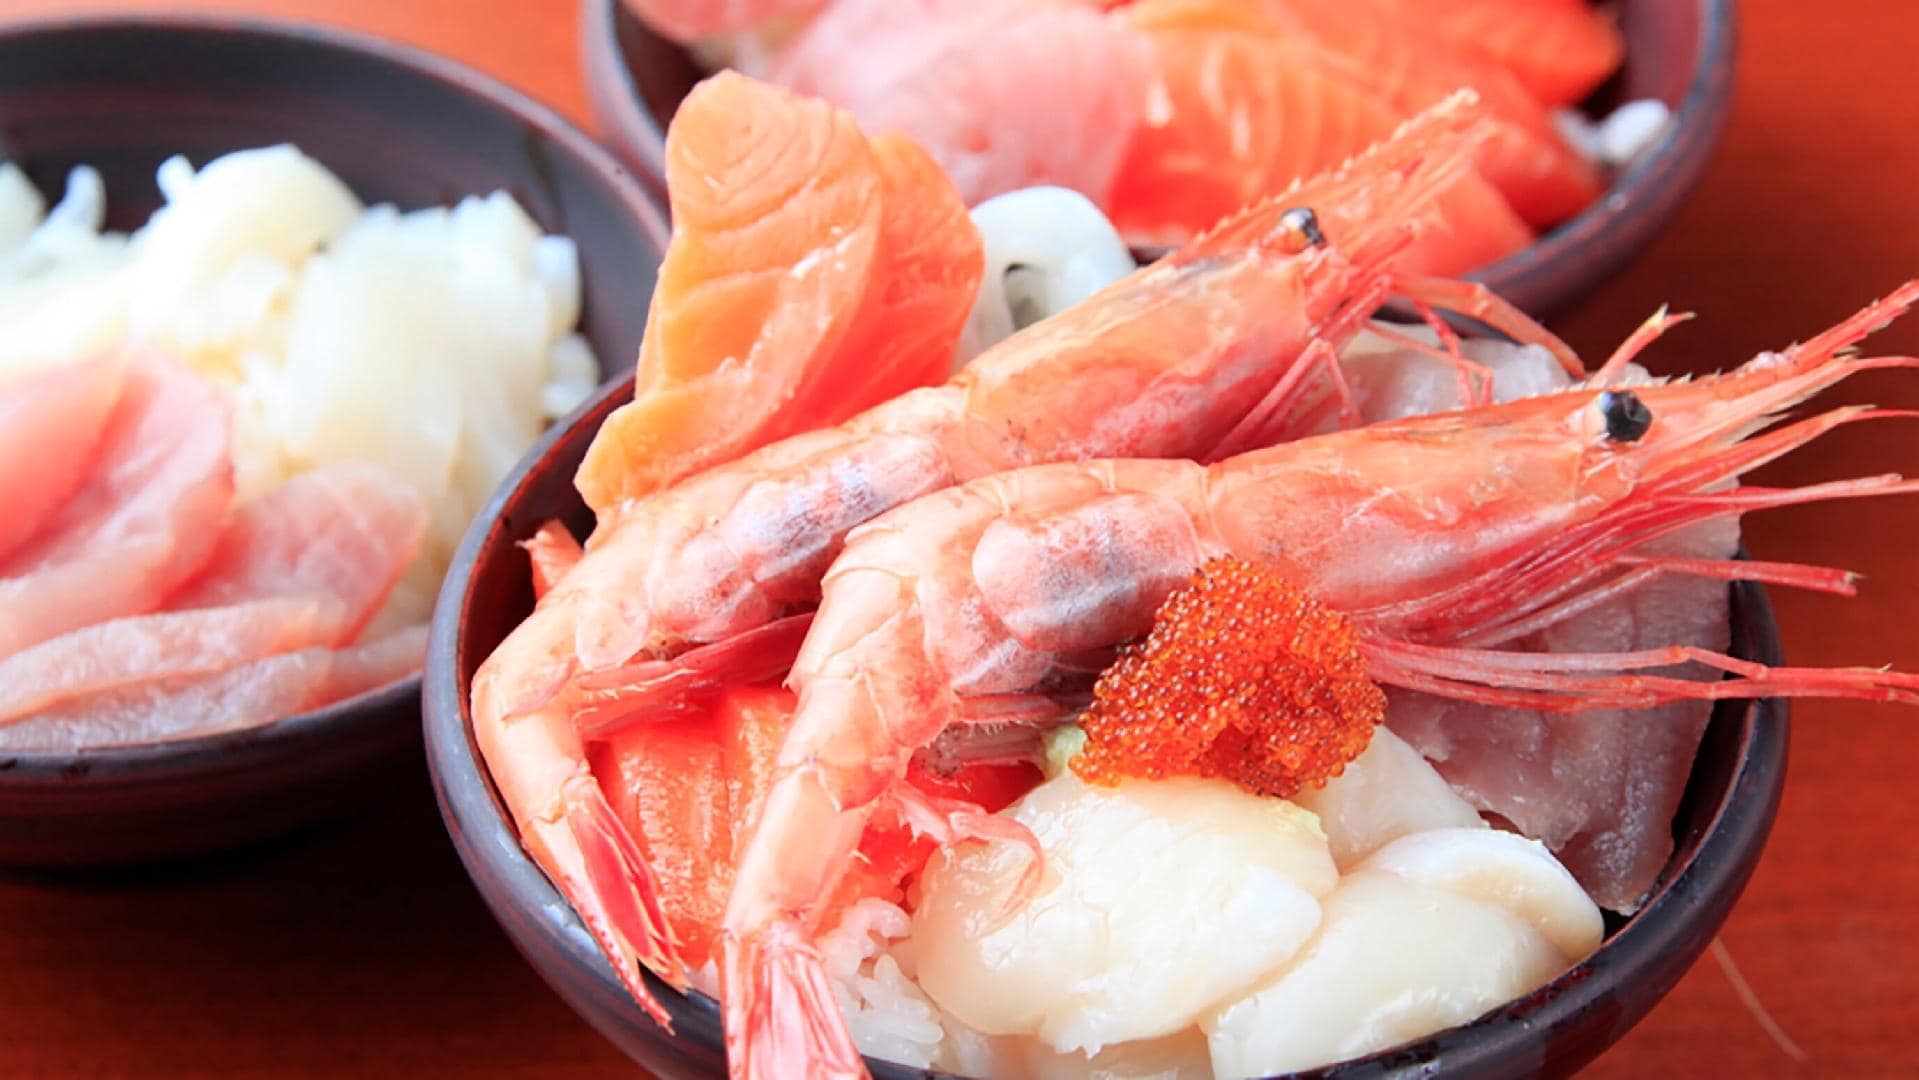 [Meal] Gambar mangkuk seafood (prasmanan)